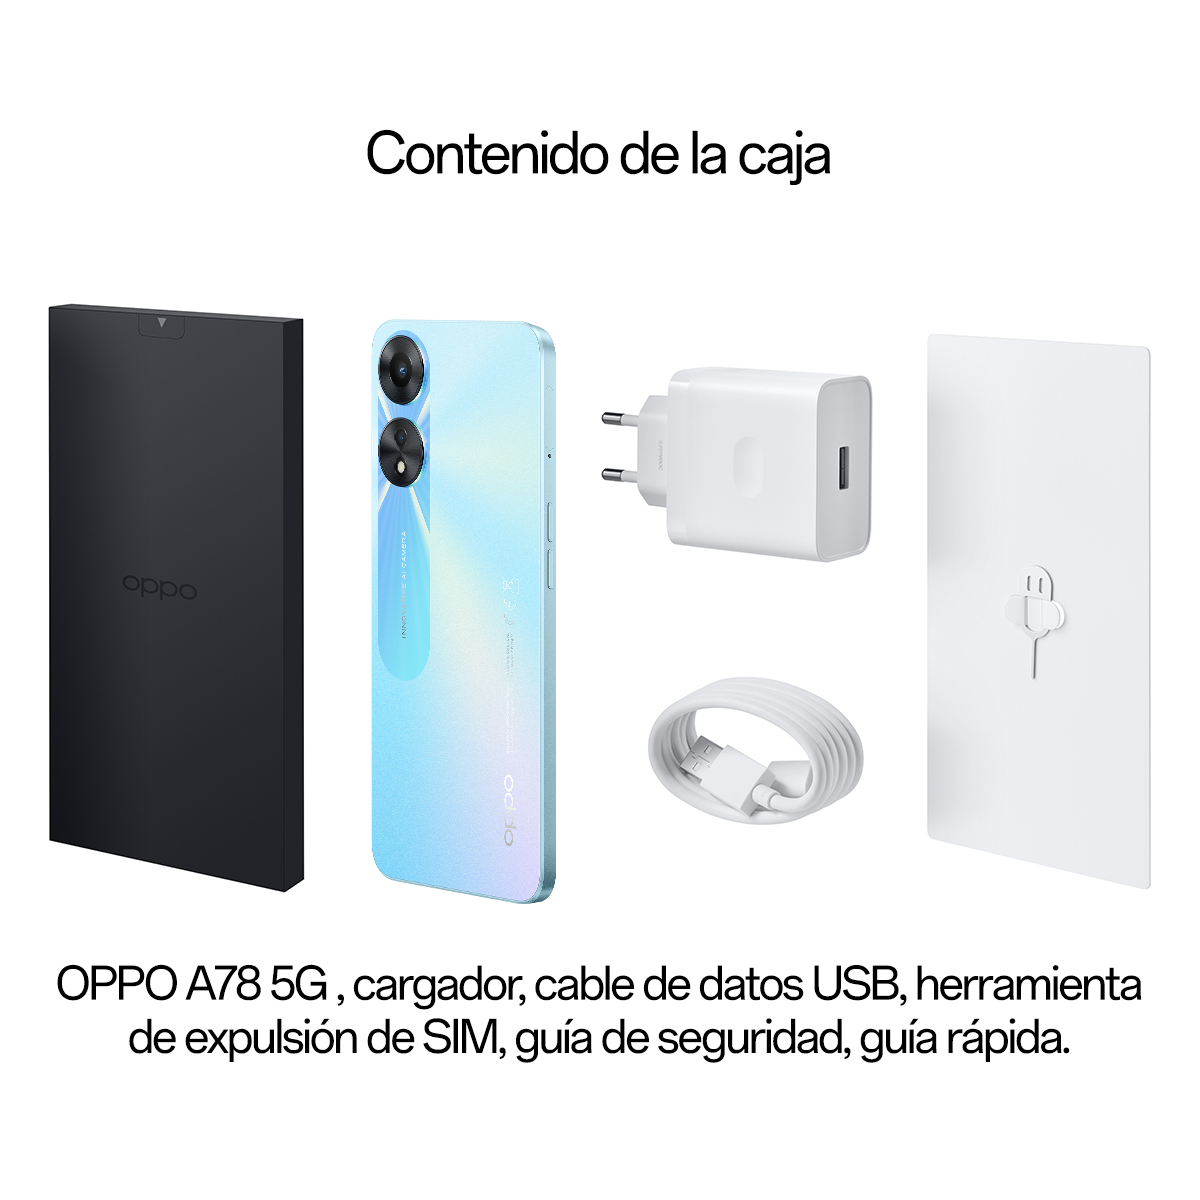 Oppo A78 5G: Precio, características y donde comprar